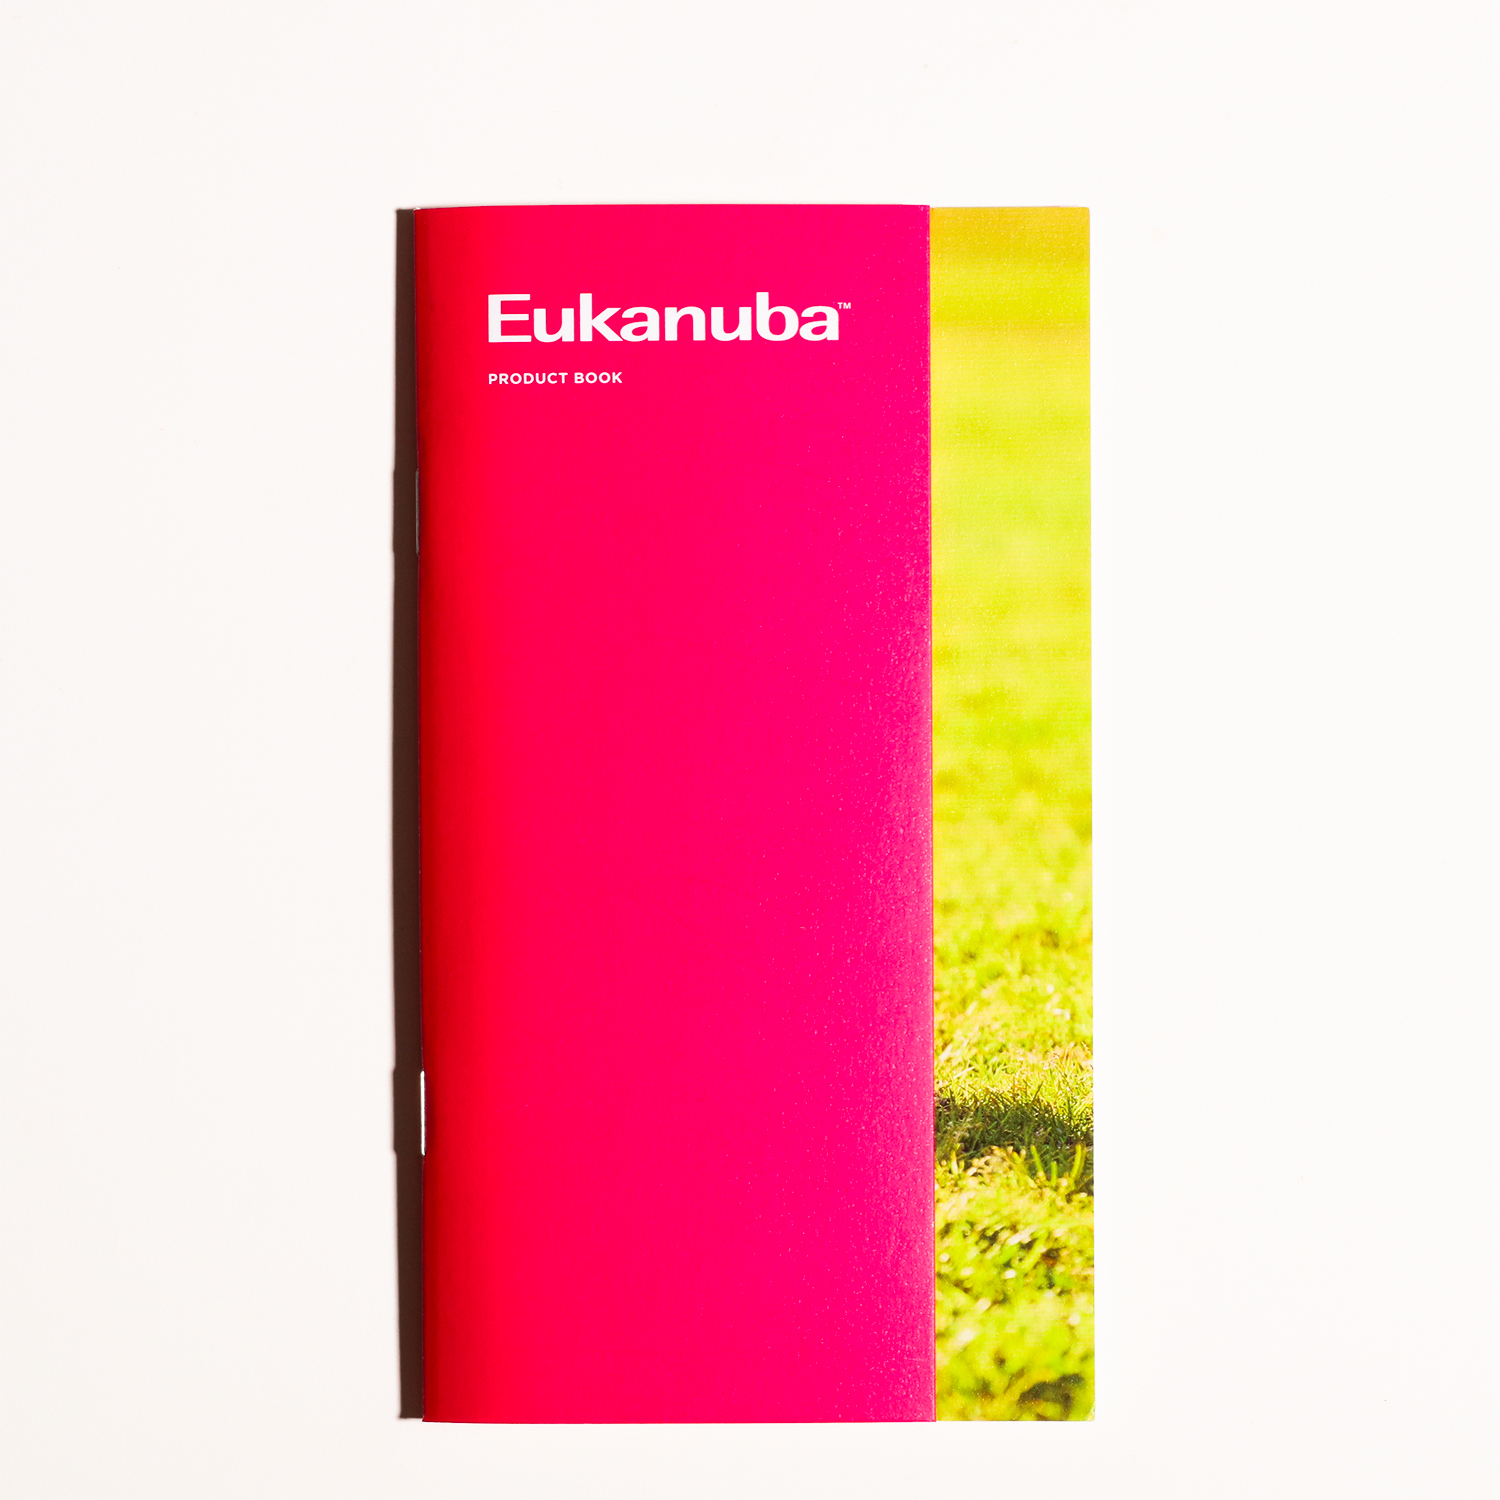 「Eukanuba」コピーライティング